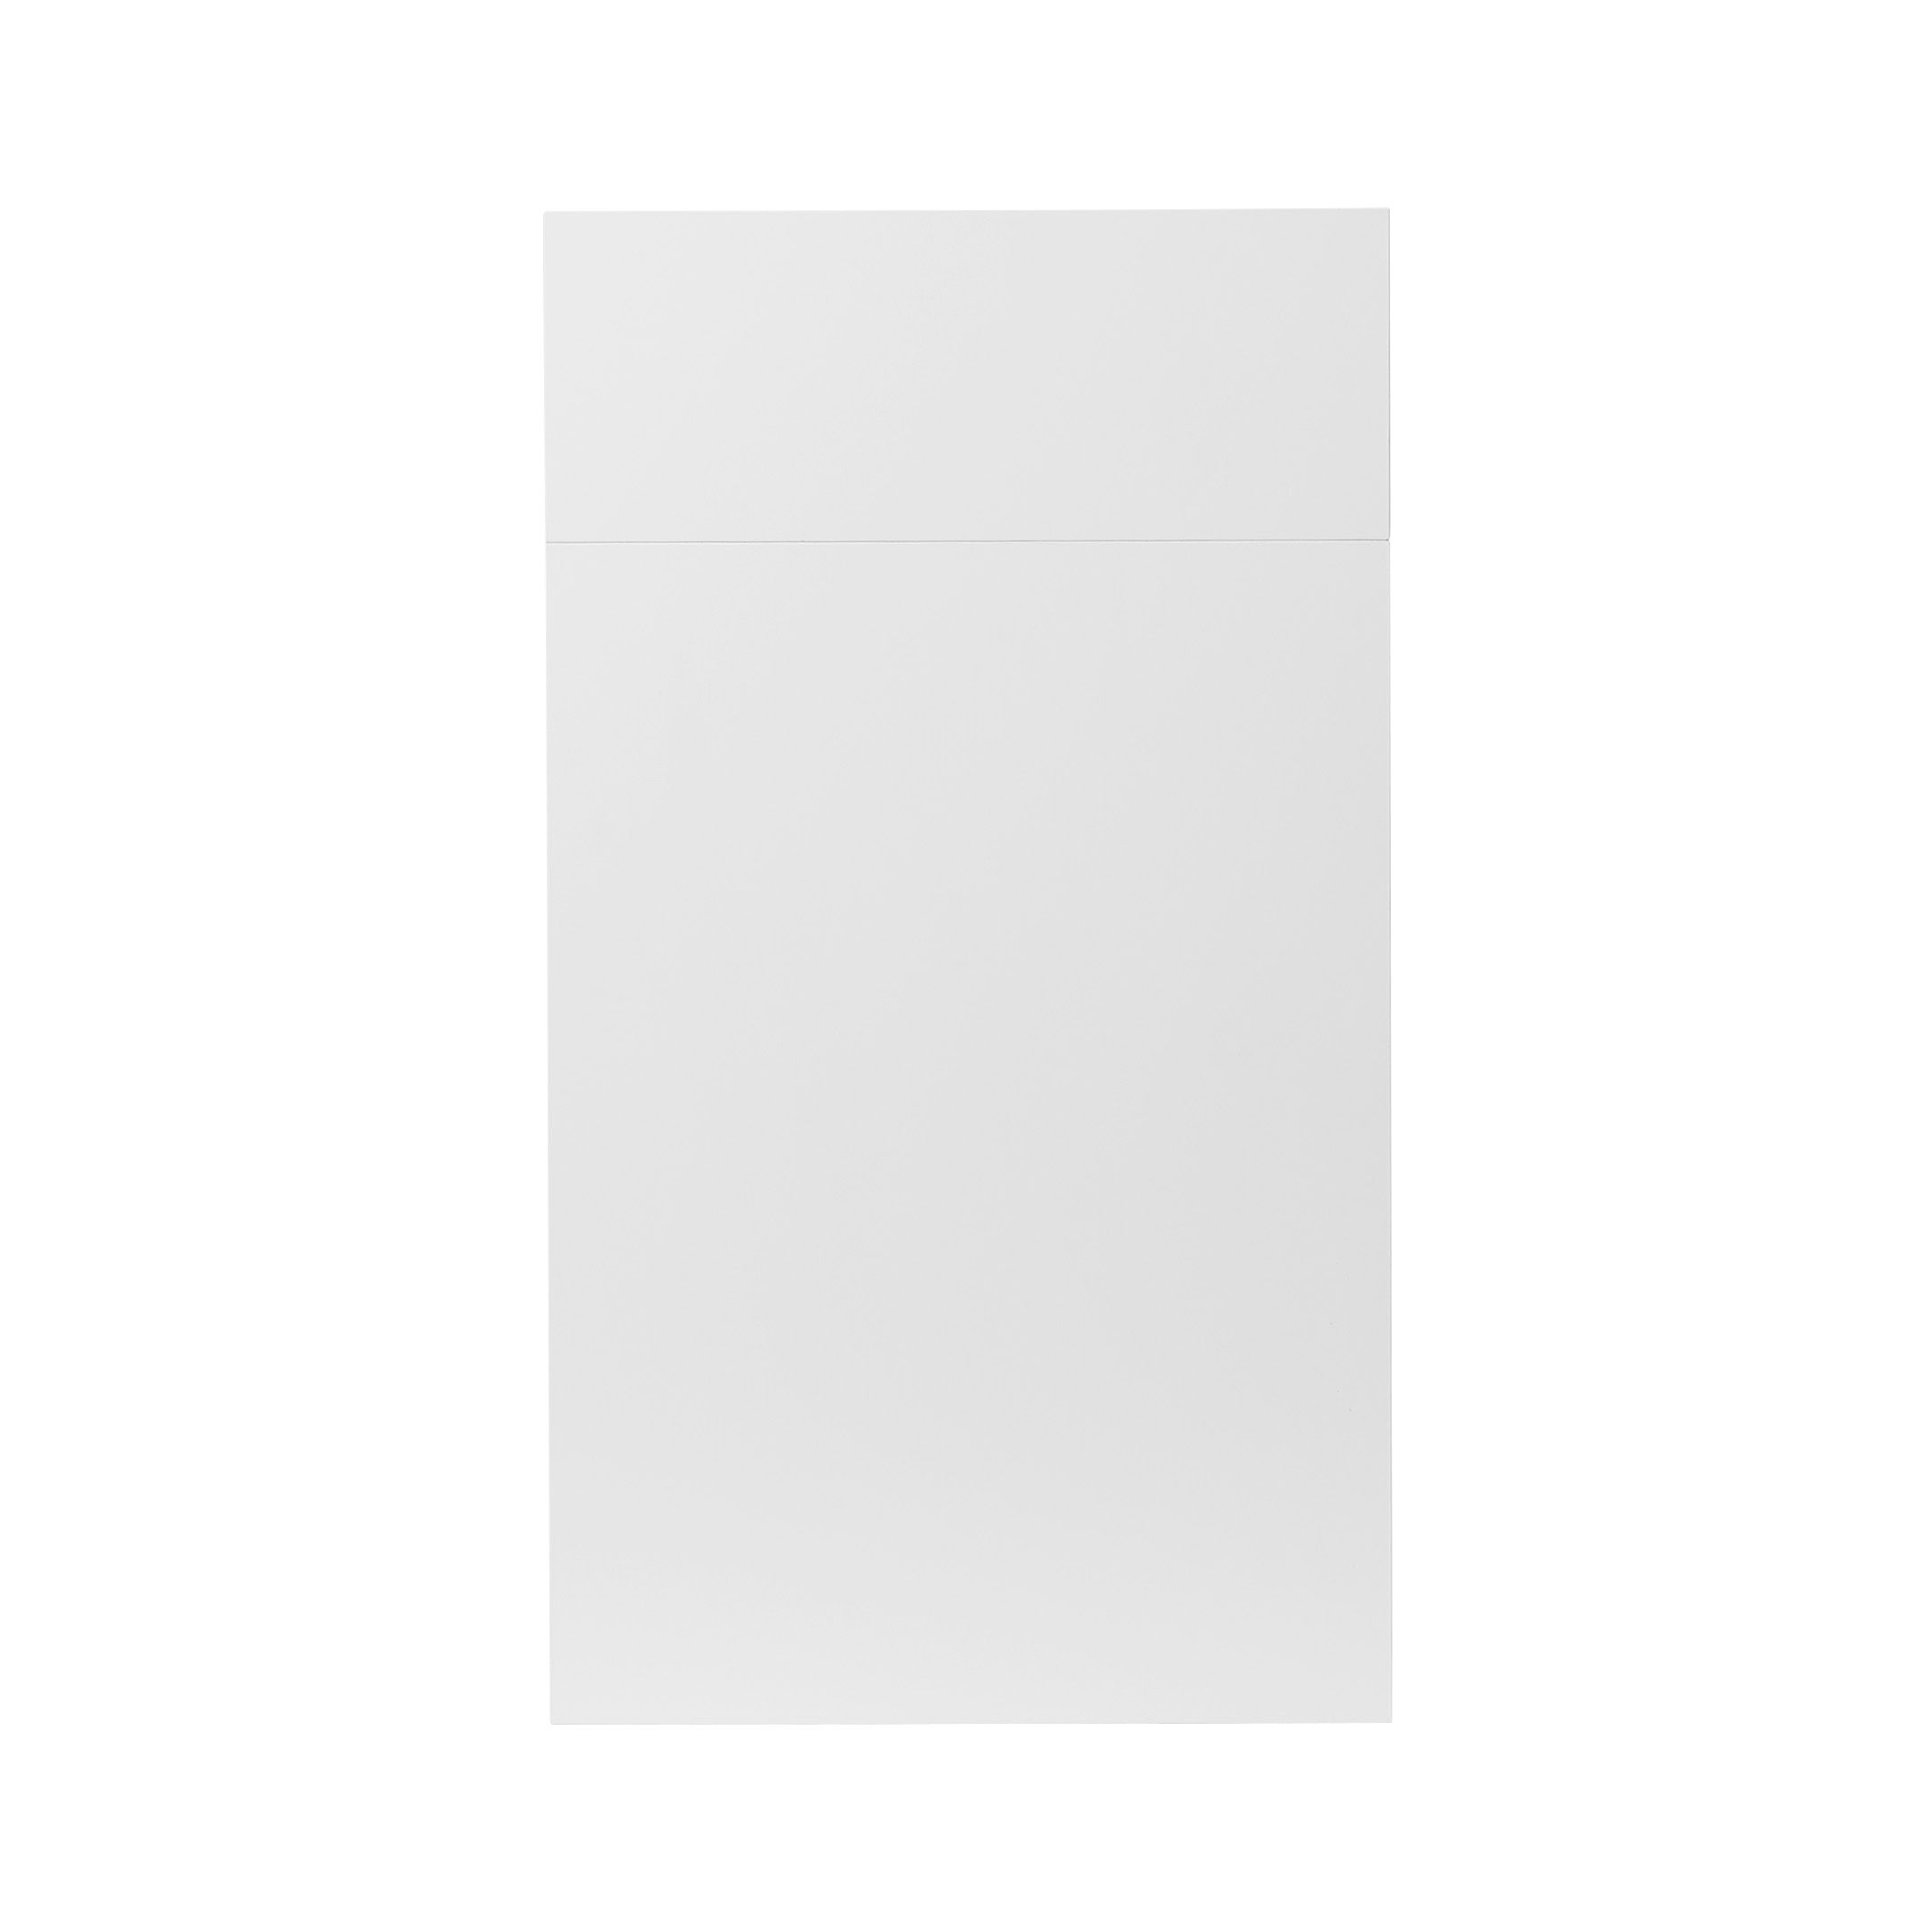 GoodHome Balsamita Matt white slab Drawerline Cabinet door, (W)400mm (H)715mm (T)16mm